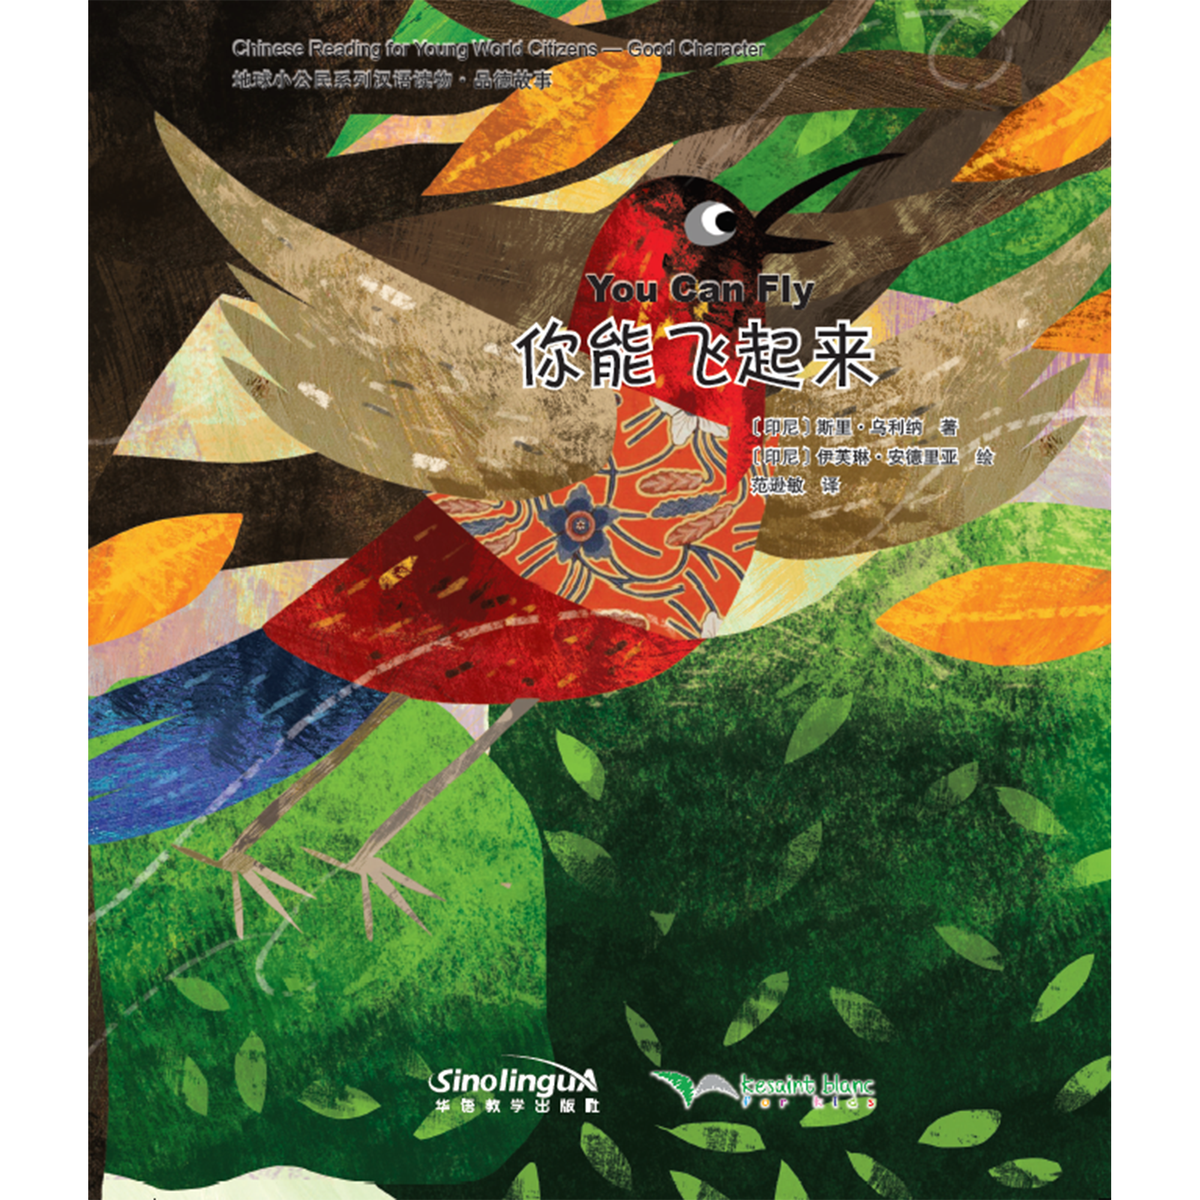 地球小公民系列汉语读物：品德故事·你能飞起来